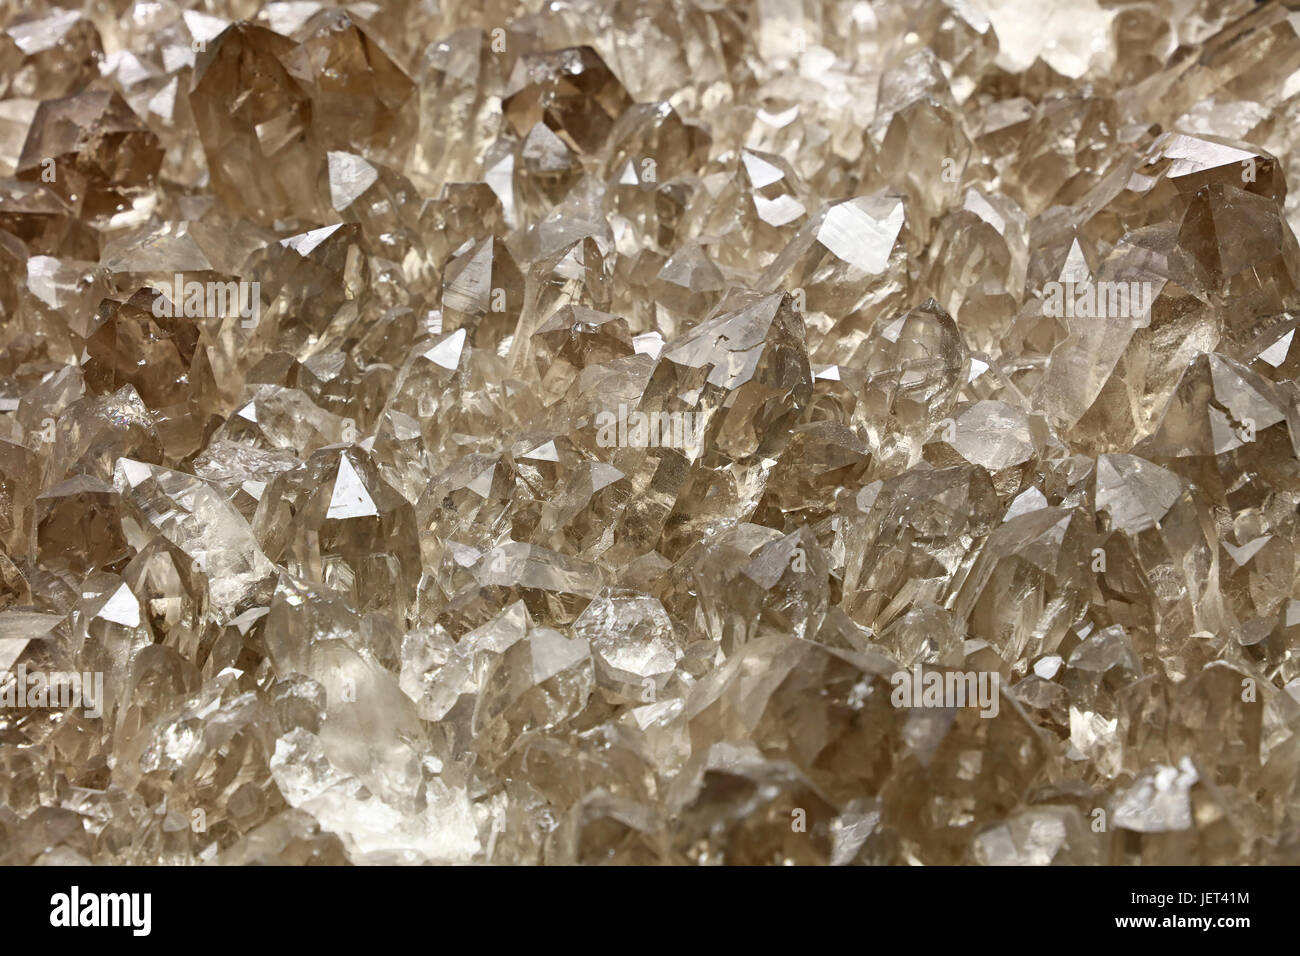 Groupe de quartz brun clair transparent cristaux minéraux (composition chimique SiO2) close up, élevé, angle, vue, Banque D'Images